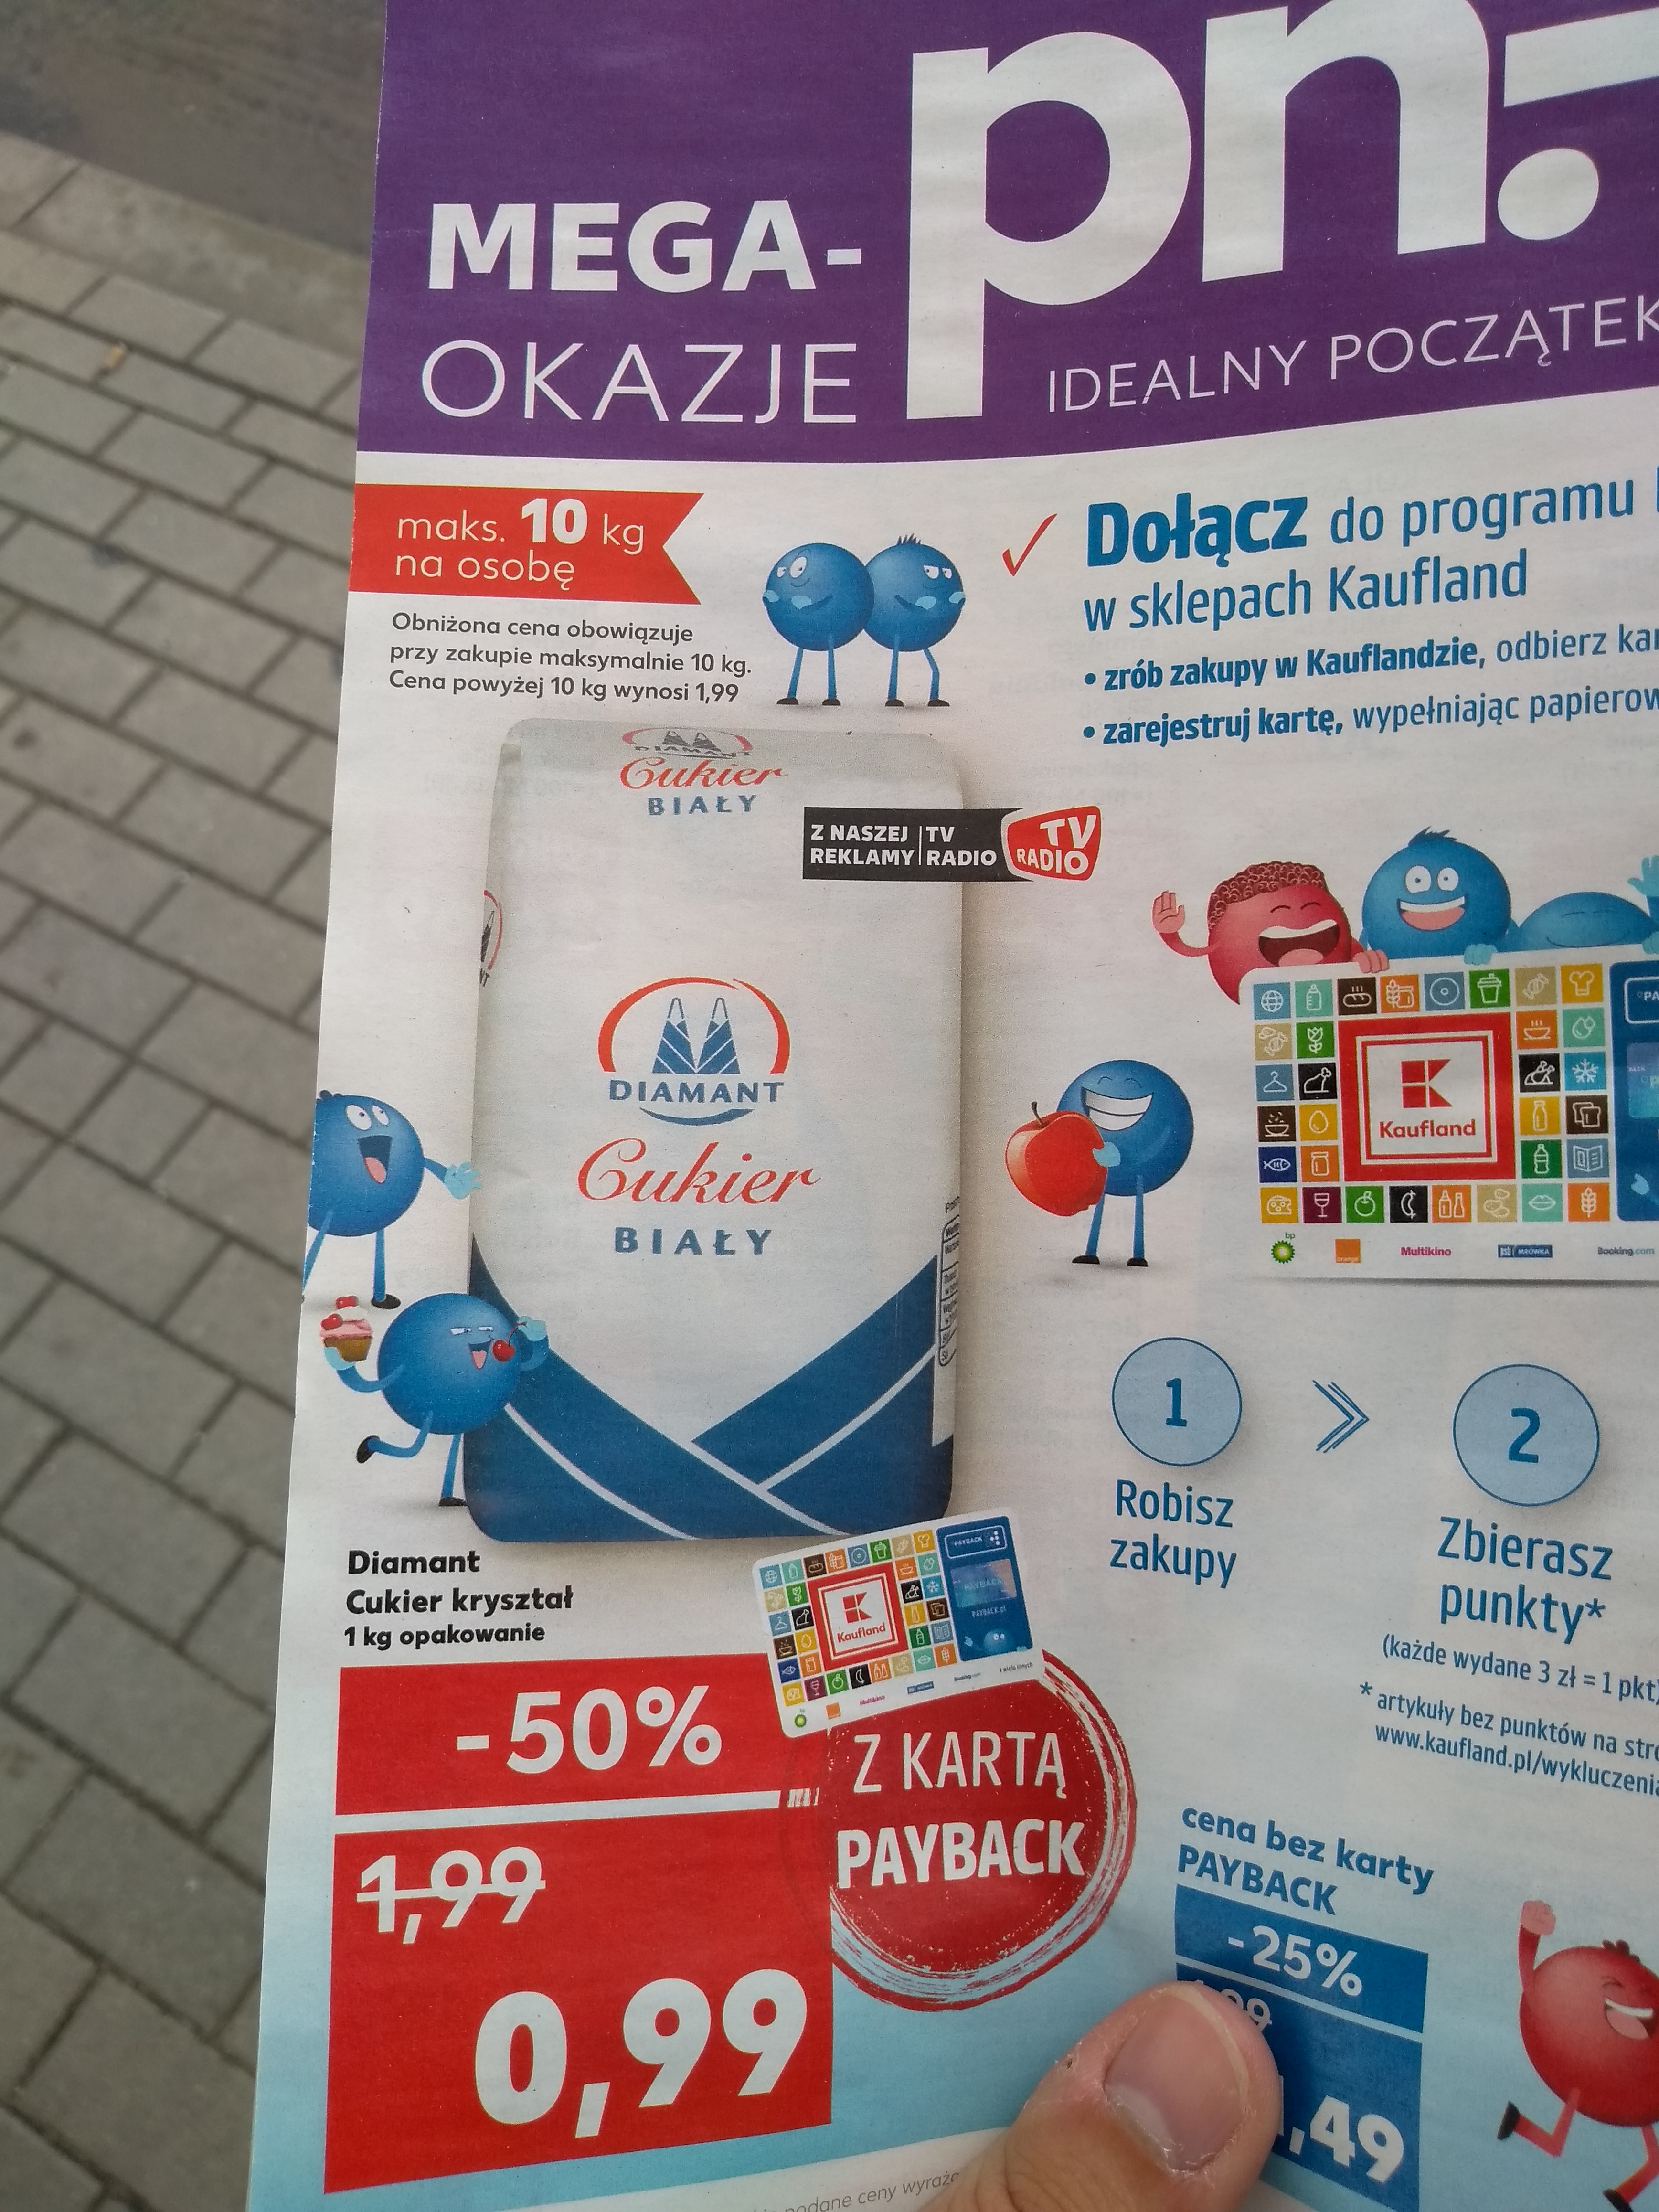 kaufland karta Kaufland cukier biały za 99groszy z kartą Payback   Pepper.pl kaufland karta